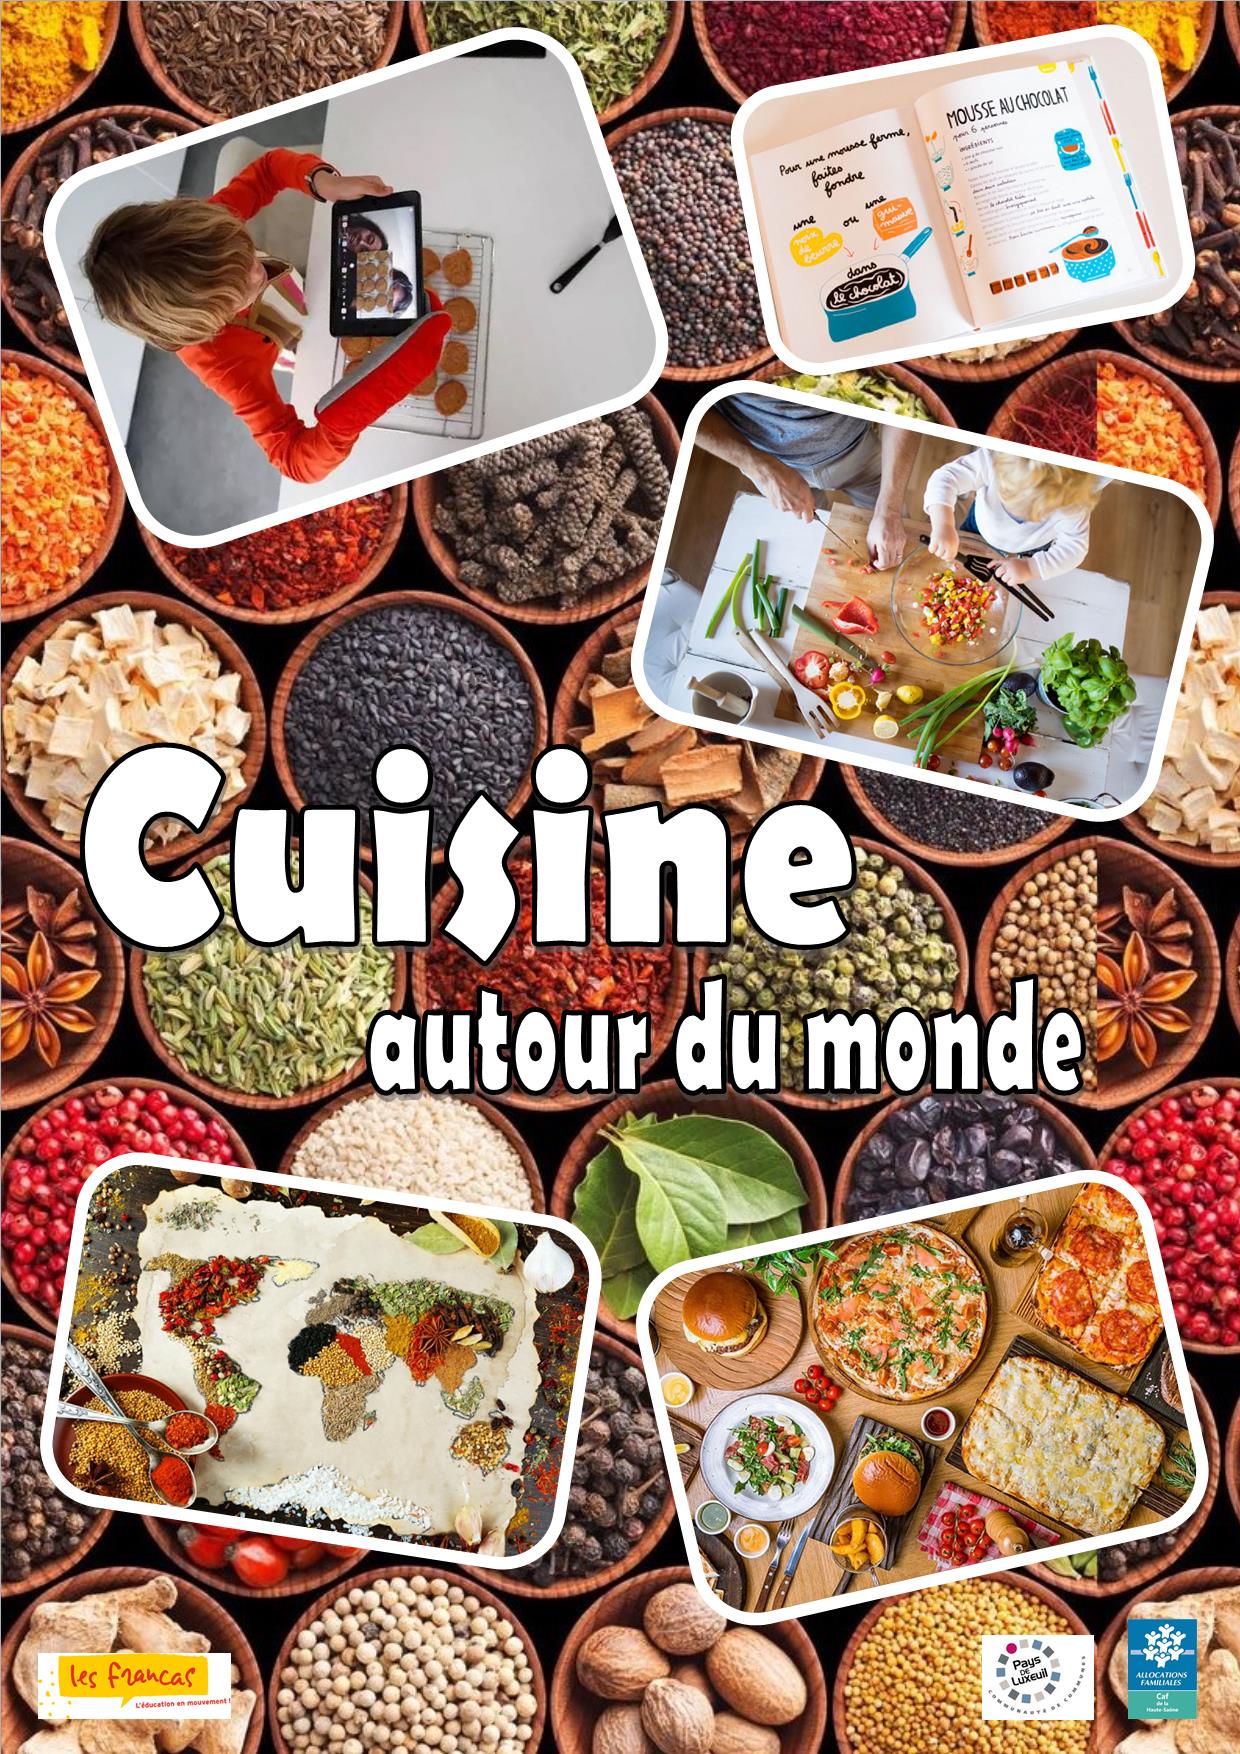 « Cuisine autour du monde » aux Francas